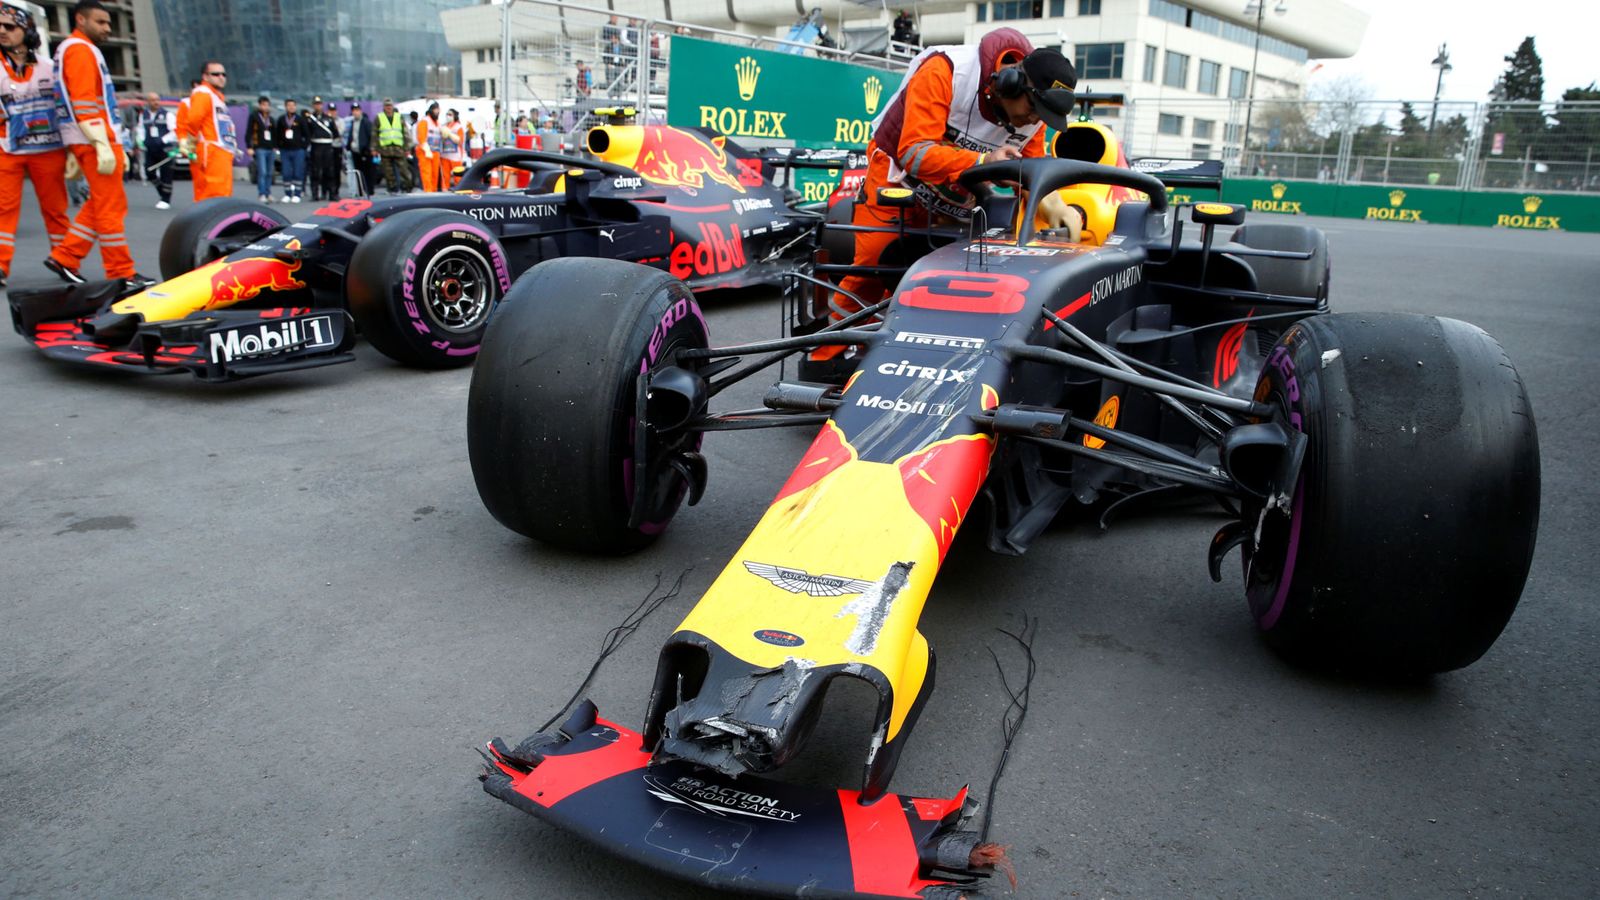 Foto: El pique entre Ricciardo y Verstappen en Azerbaiyán terminó con el primero arrollando al segundo. (Reuters)